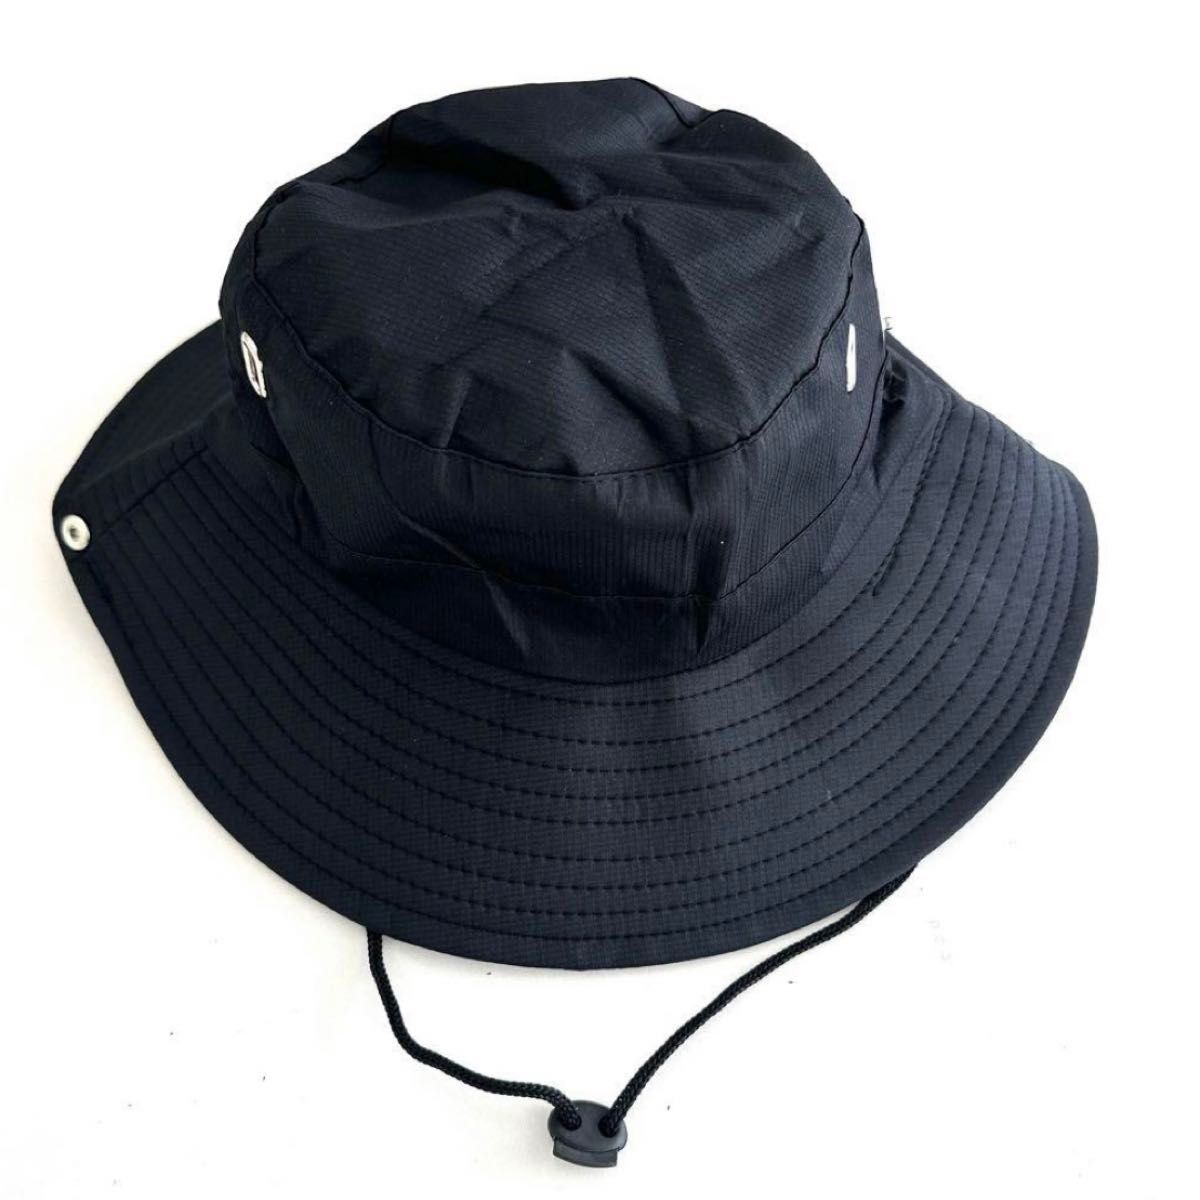 帽子 サファリハット テンガロンハット  つば広ハット レディース メンズ 男女兼用  ブラック 黒 UV  紫外線 アウトドア 